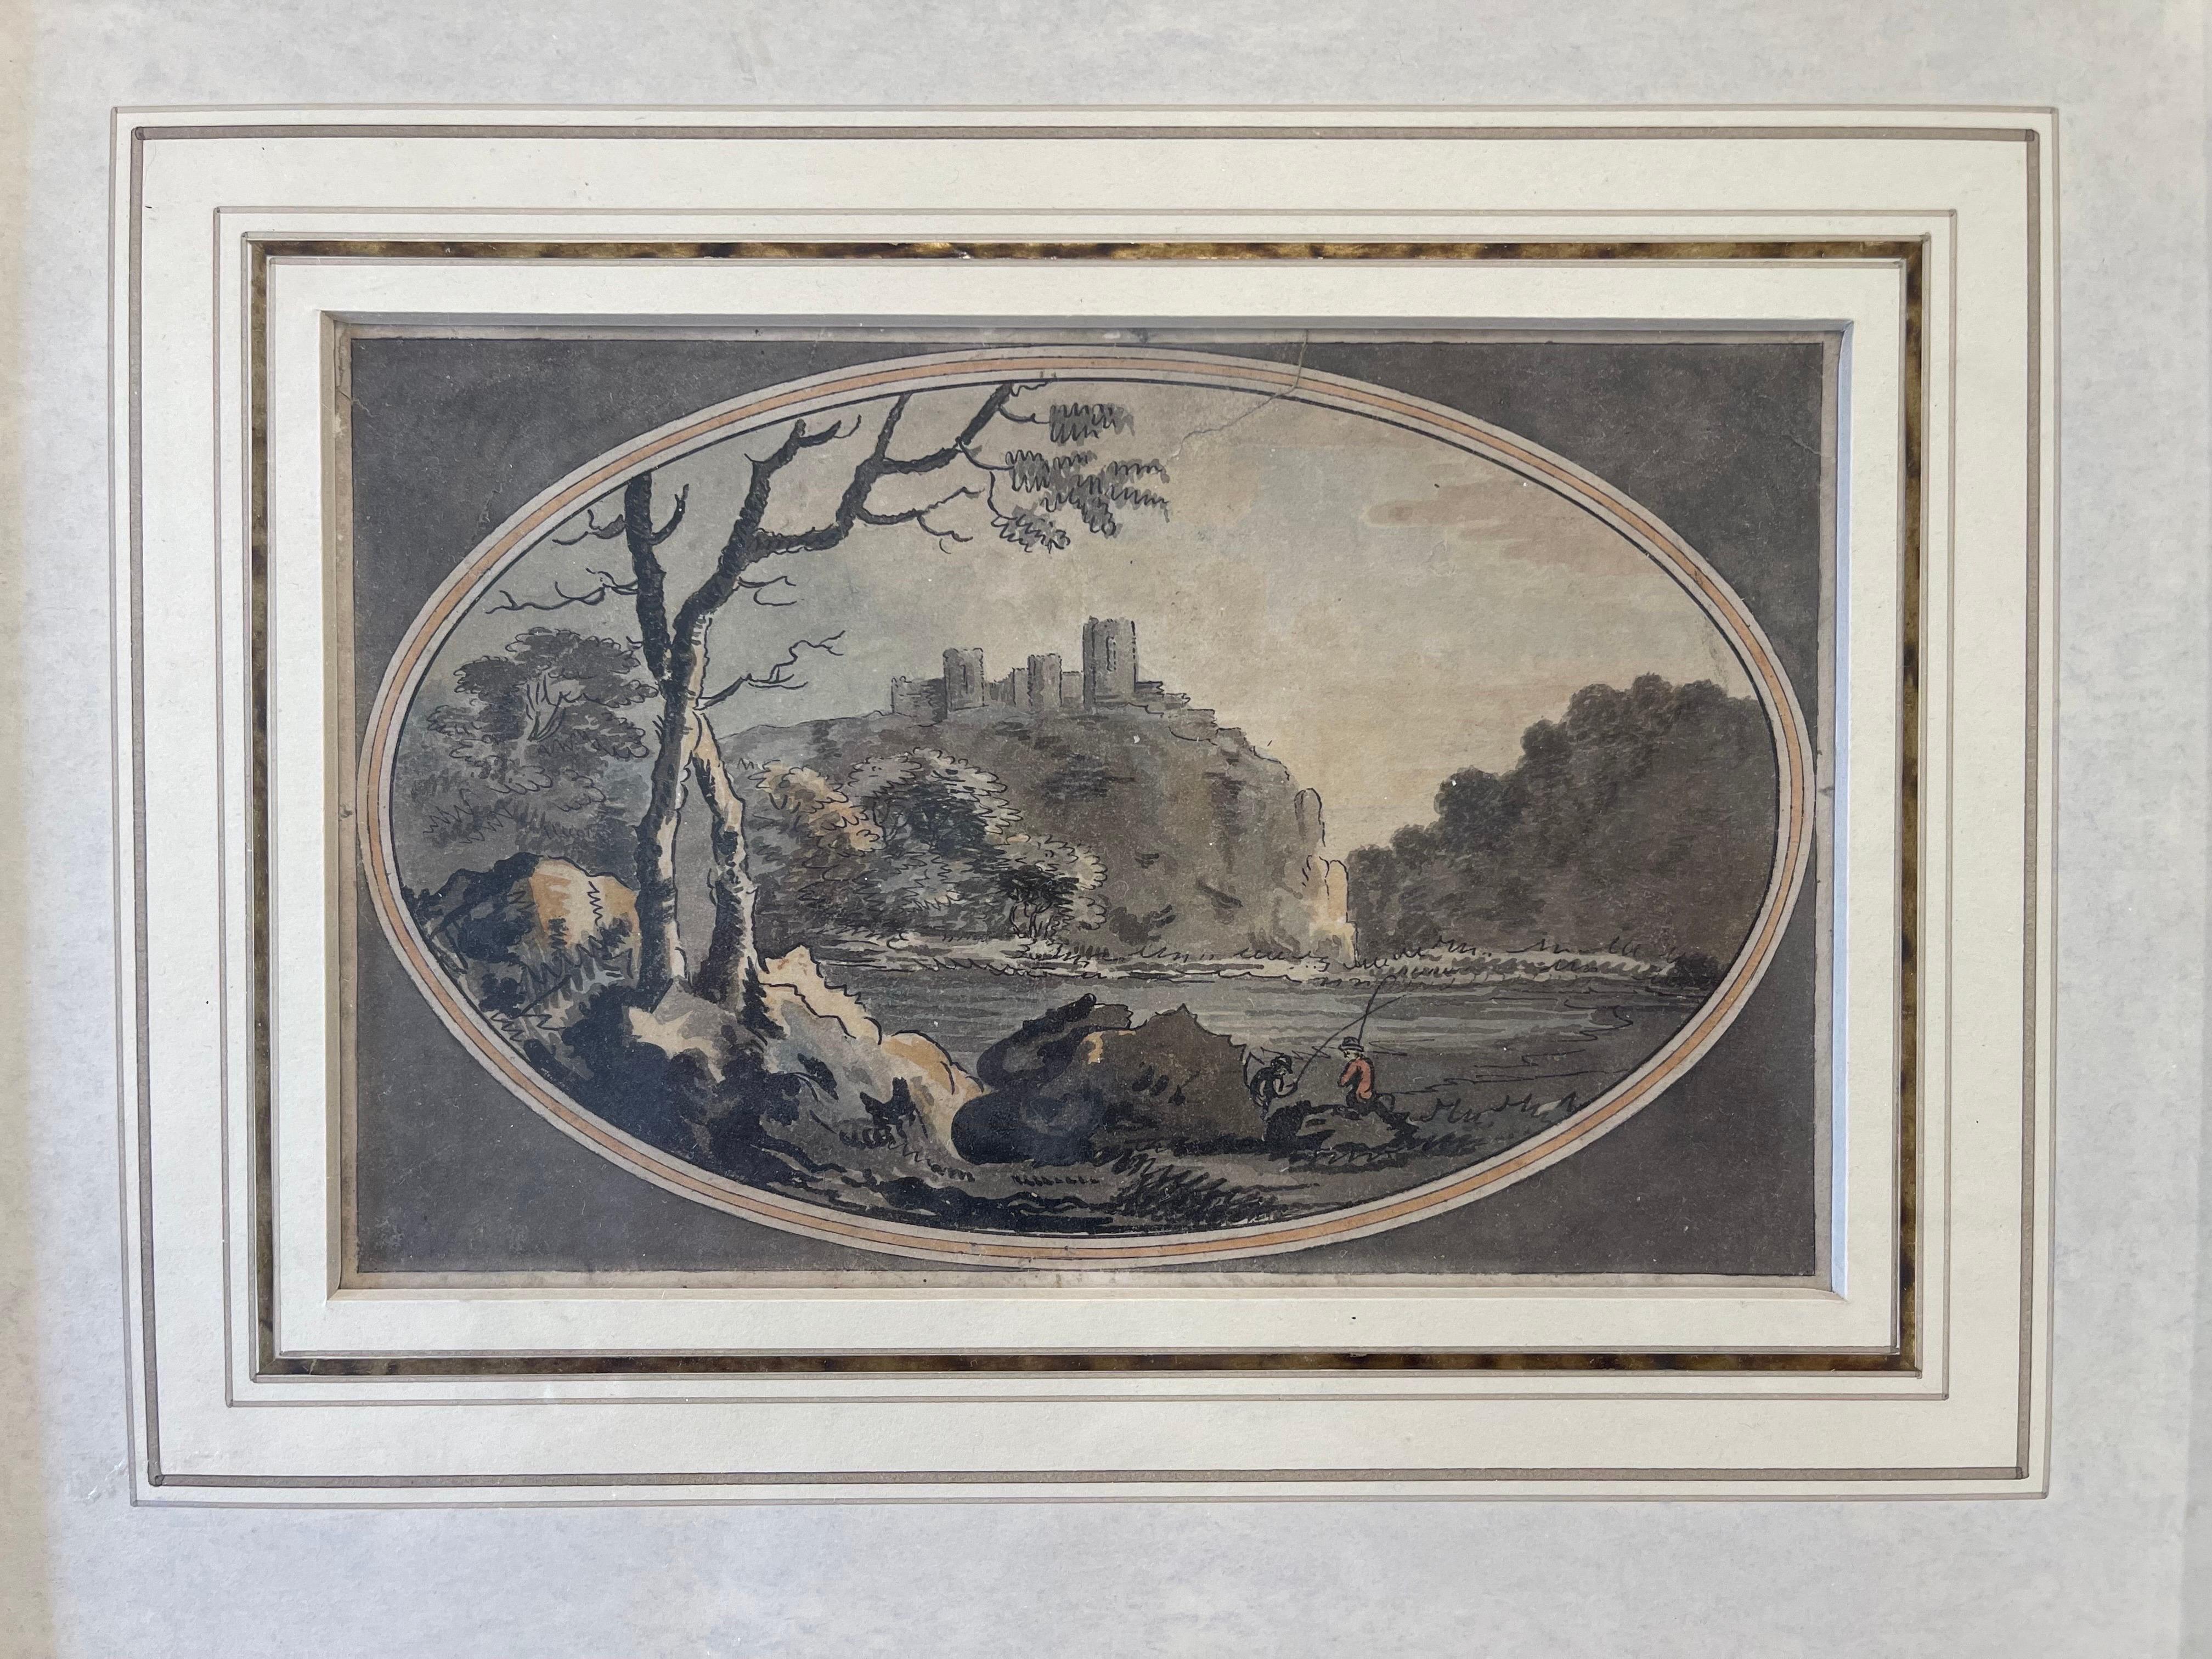 Attribué au grand William Marlowe (britannique, 1740-1813). La peinture à l'encre, au graphite et à l'aquarelle est probablement une esquisse pour une œuvre plus grande réalisée par Marlowe ou quelqu'un de son atelier. Représentant le château de